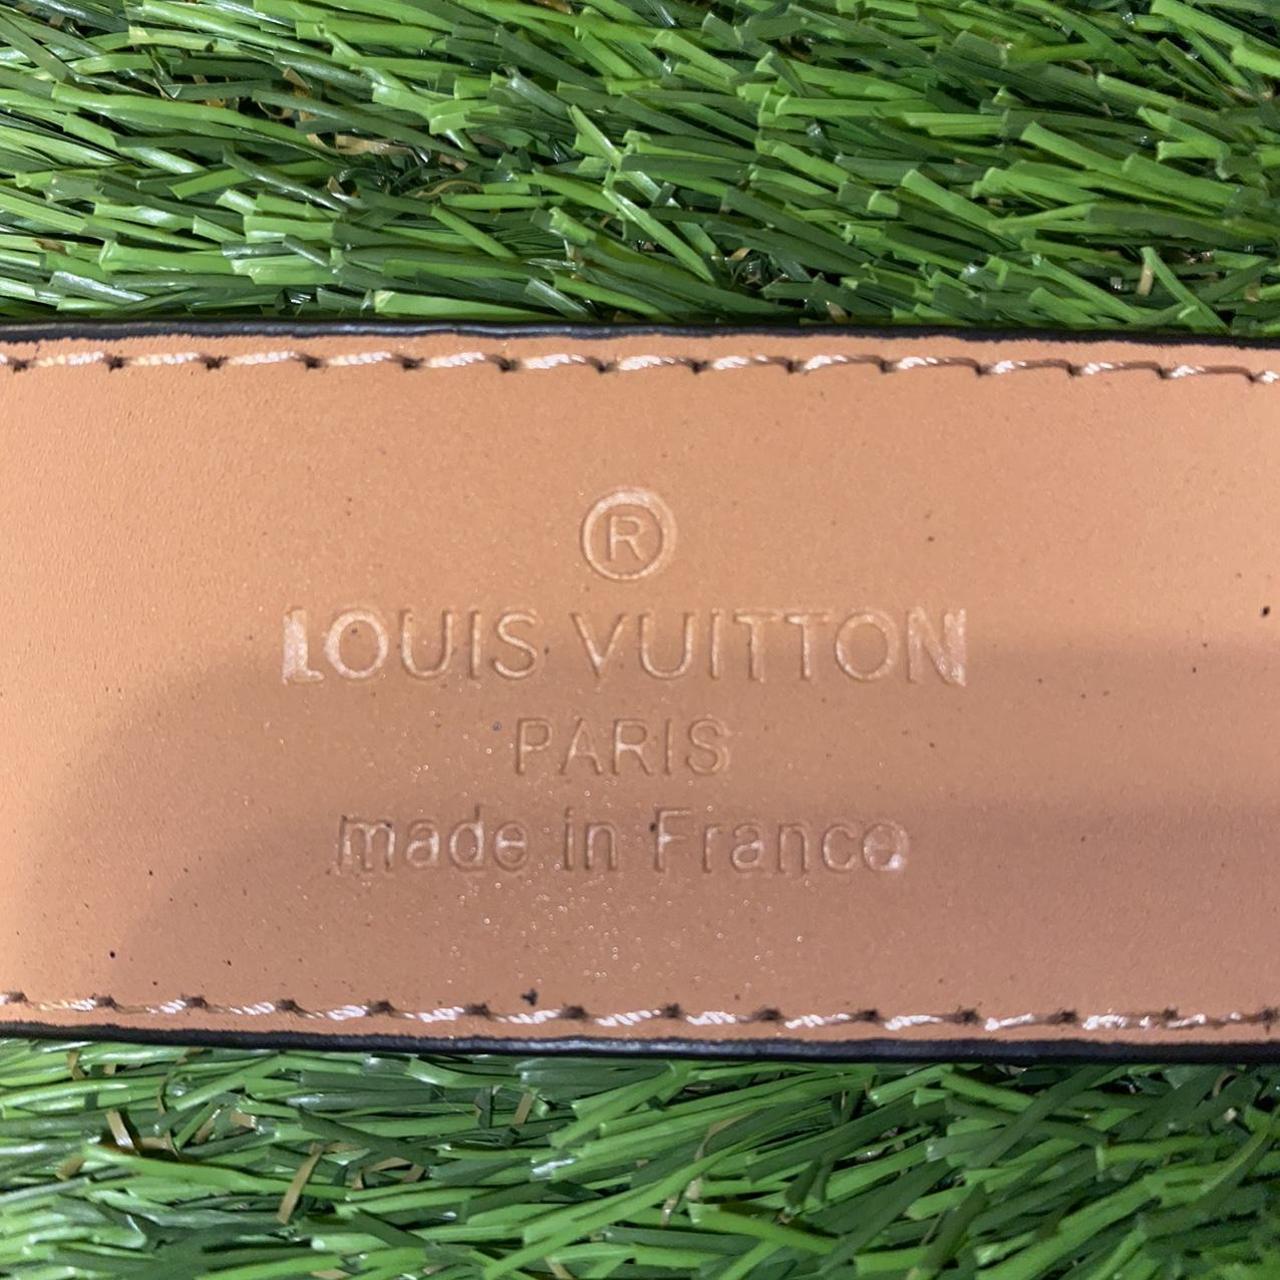 Brand new Louis Vuitton cloud Belt! Very rare - Depop